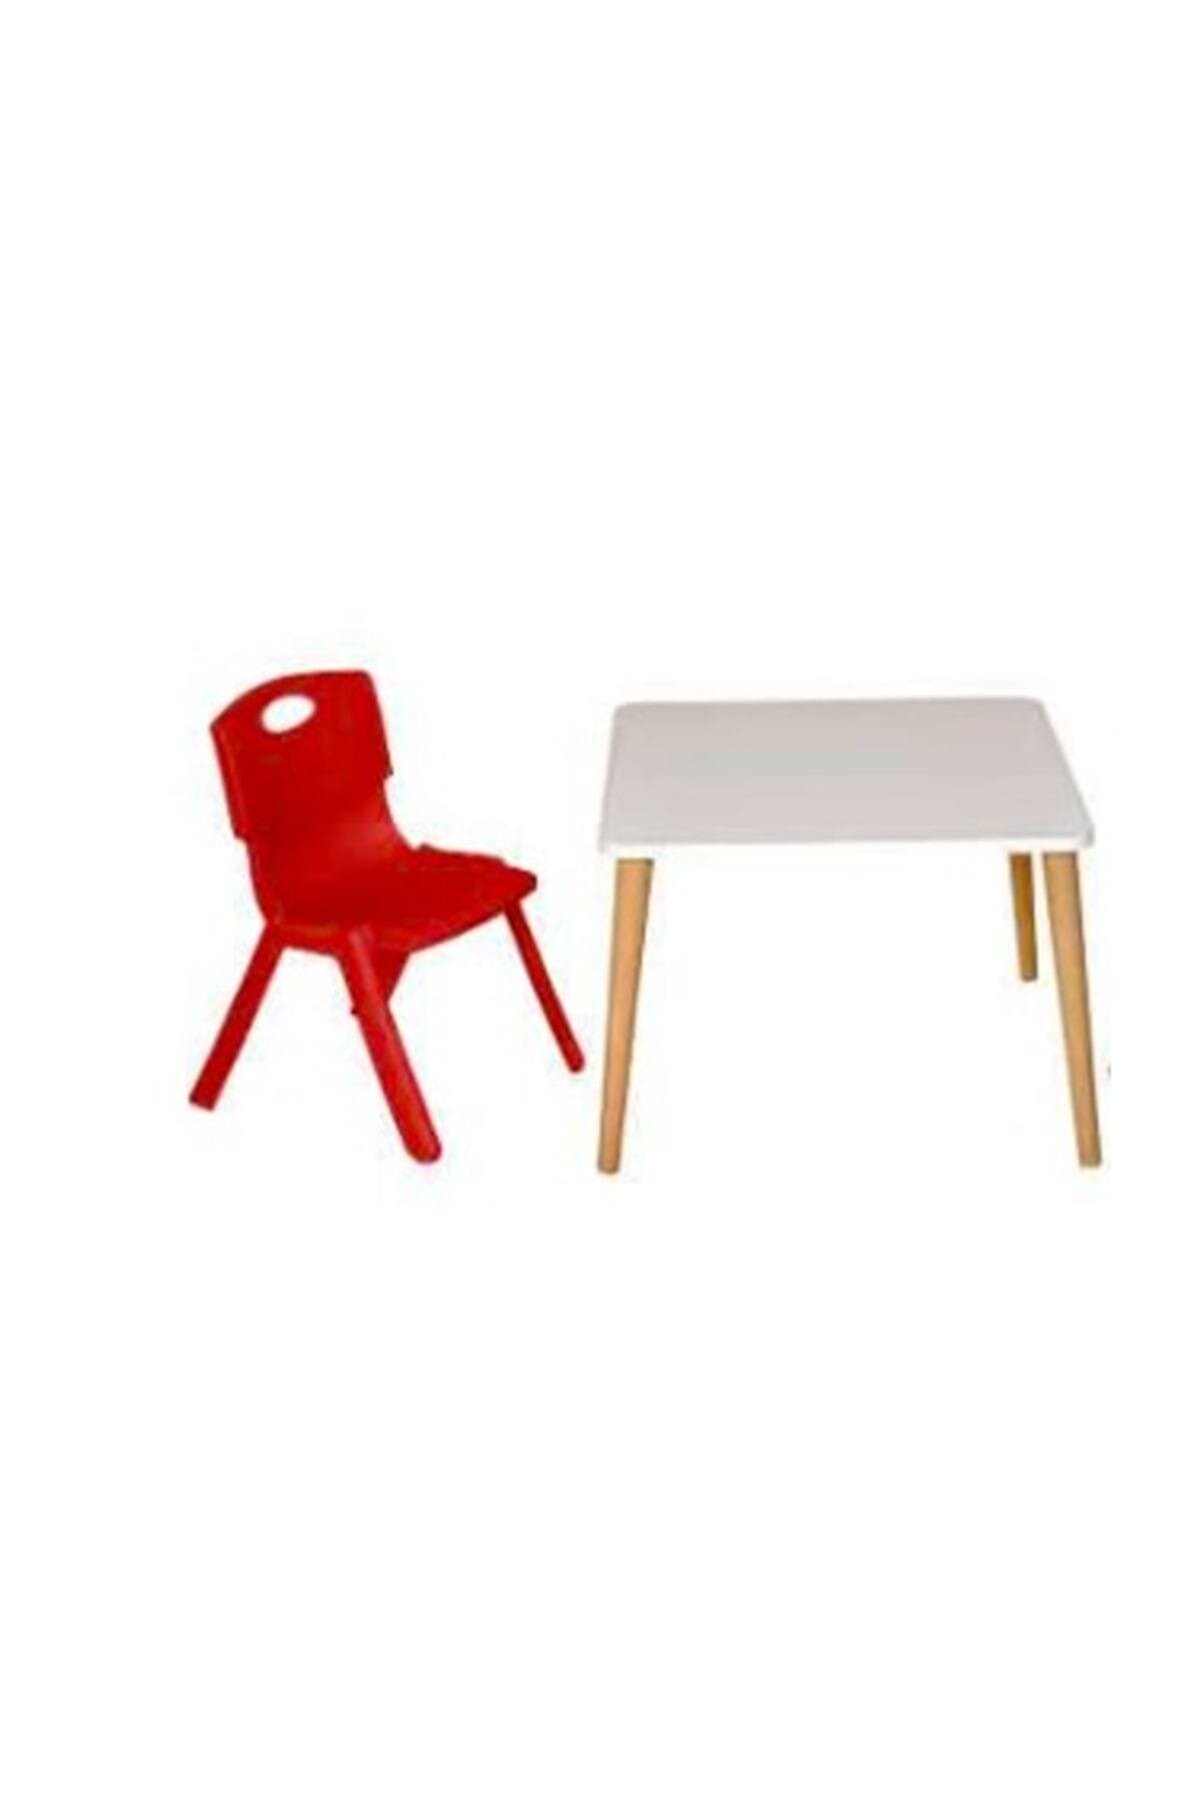 Lilabebe Çocuk Aktivite Masası1 sandalye 1 Masa Kırmızı Plastik 60x60